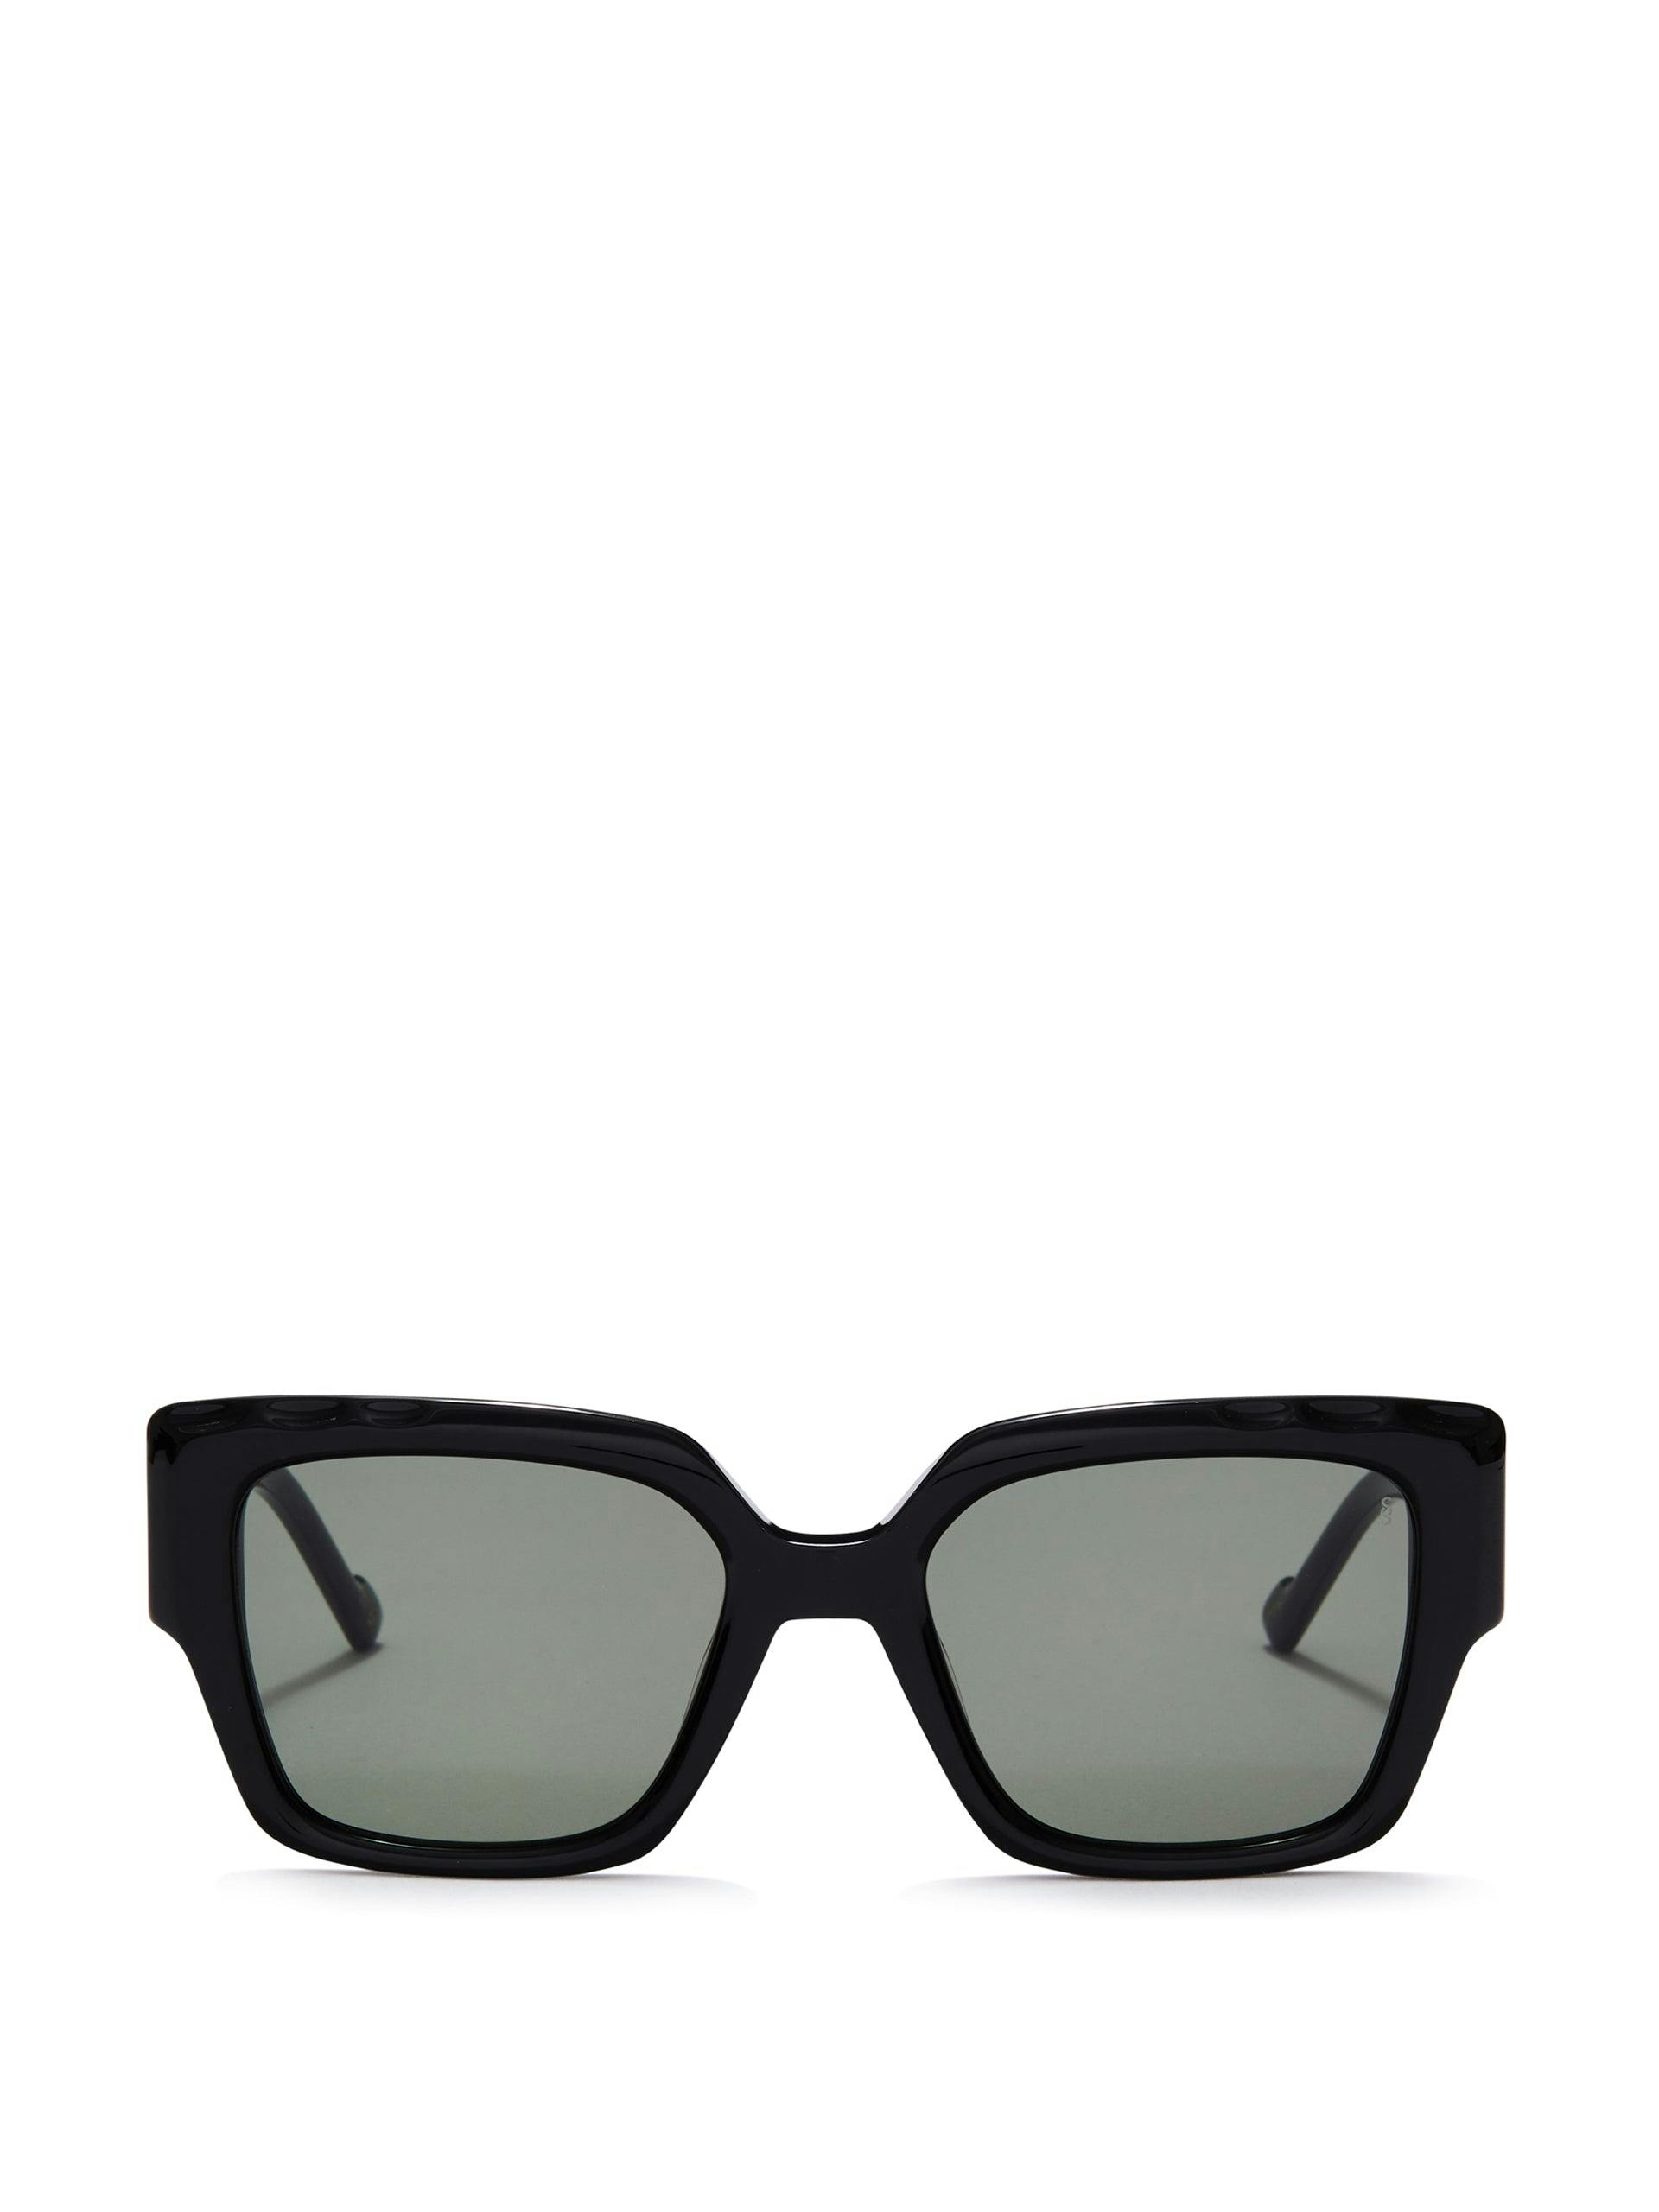 Ally sunglasses in black